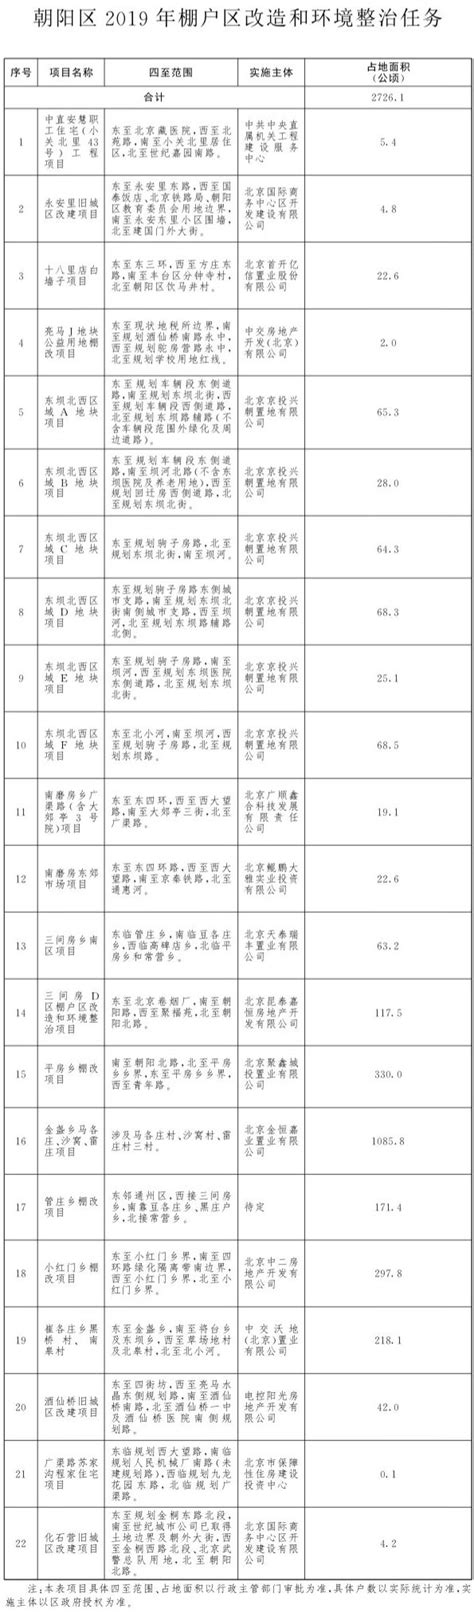 2019朝阳区棚户区改造最新名单- 北京本地宝